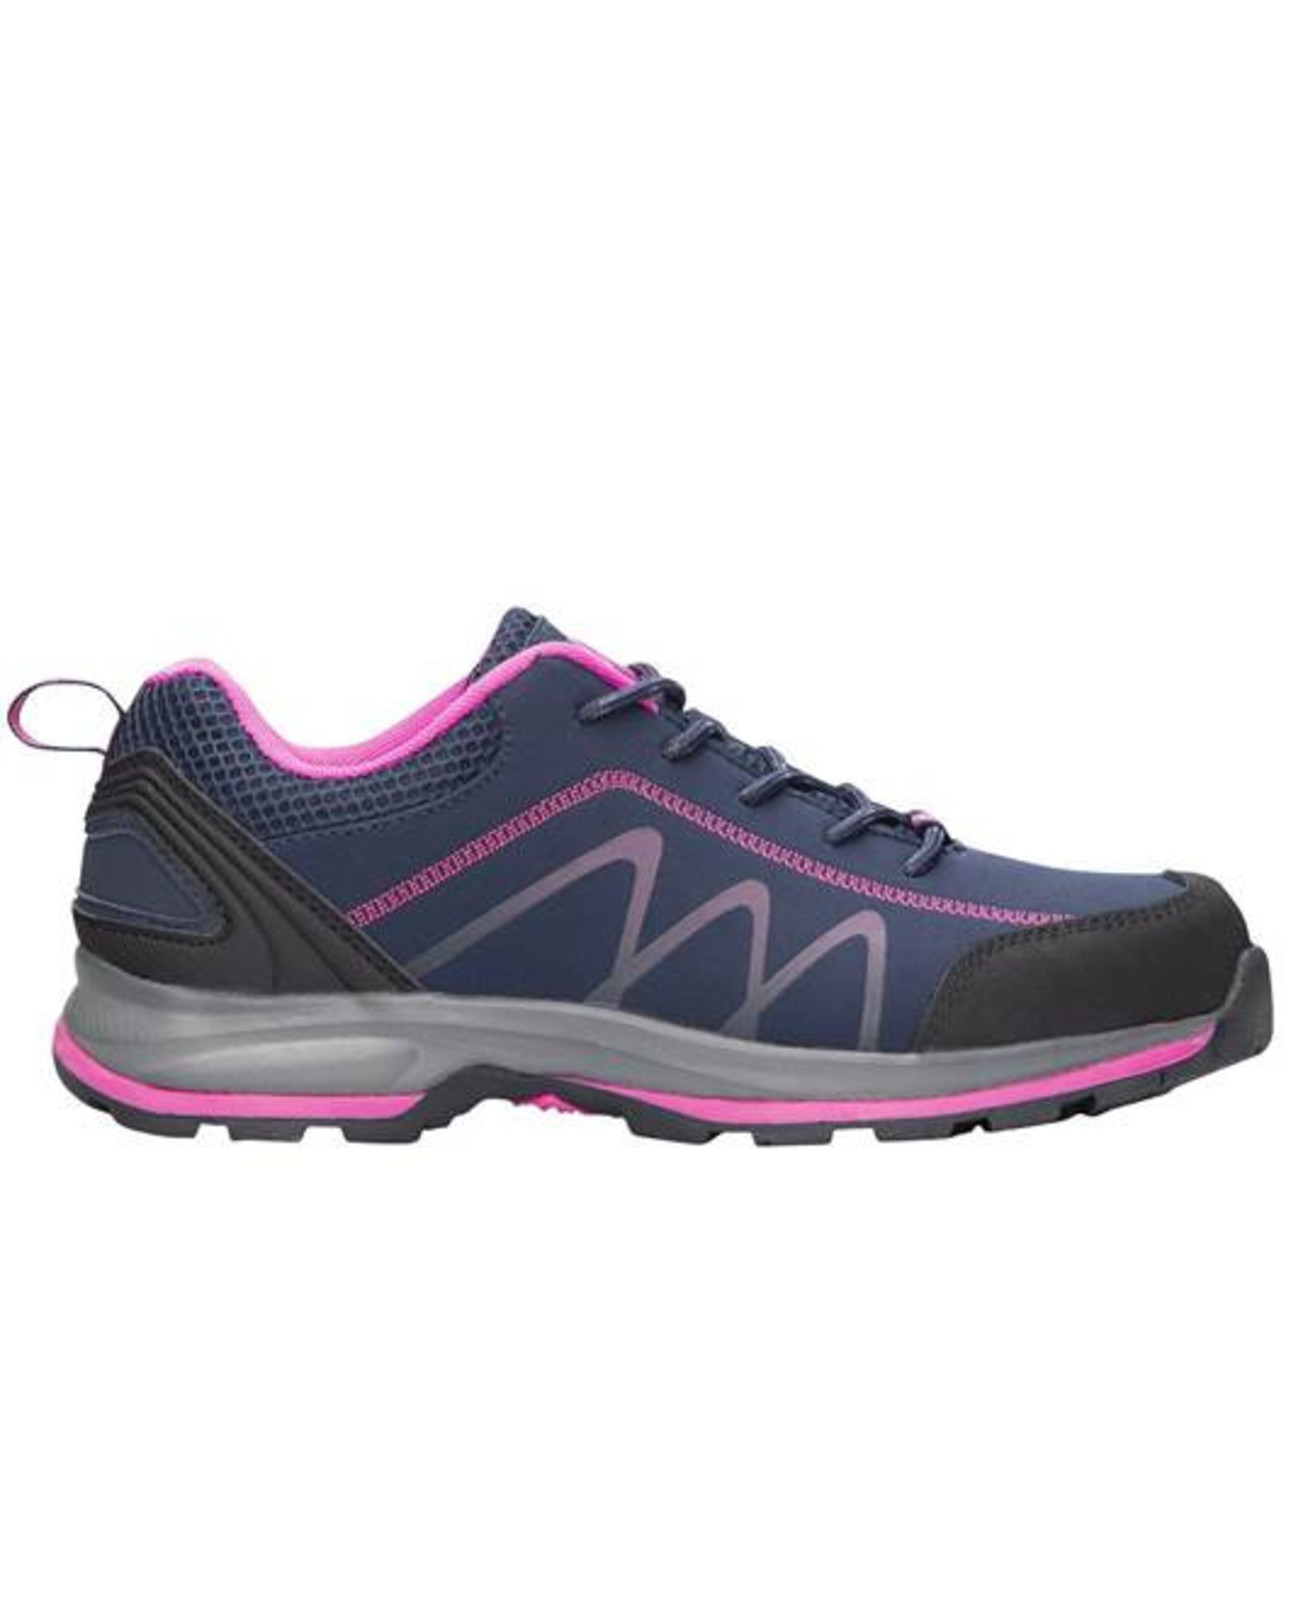 Dámska outdoor softshellová obuv Ardon Bloom - veľkosť: 37, farba: navy lila